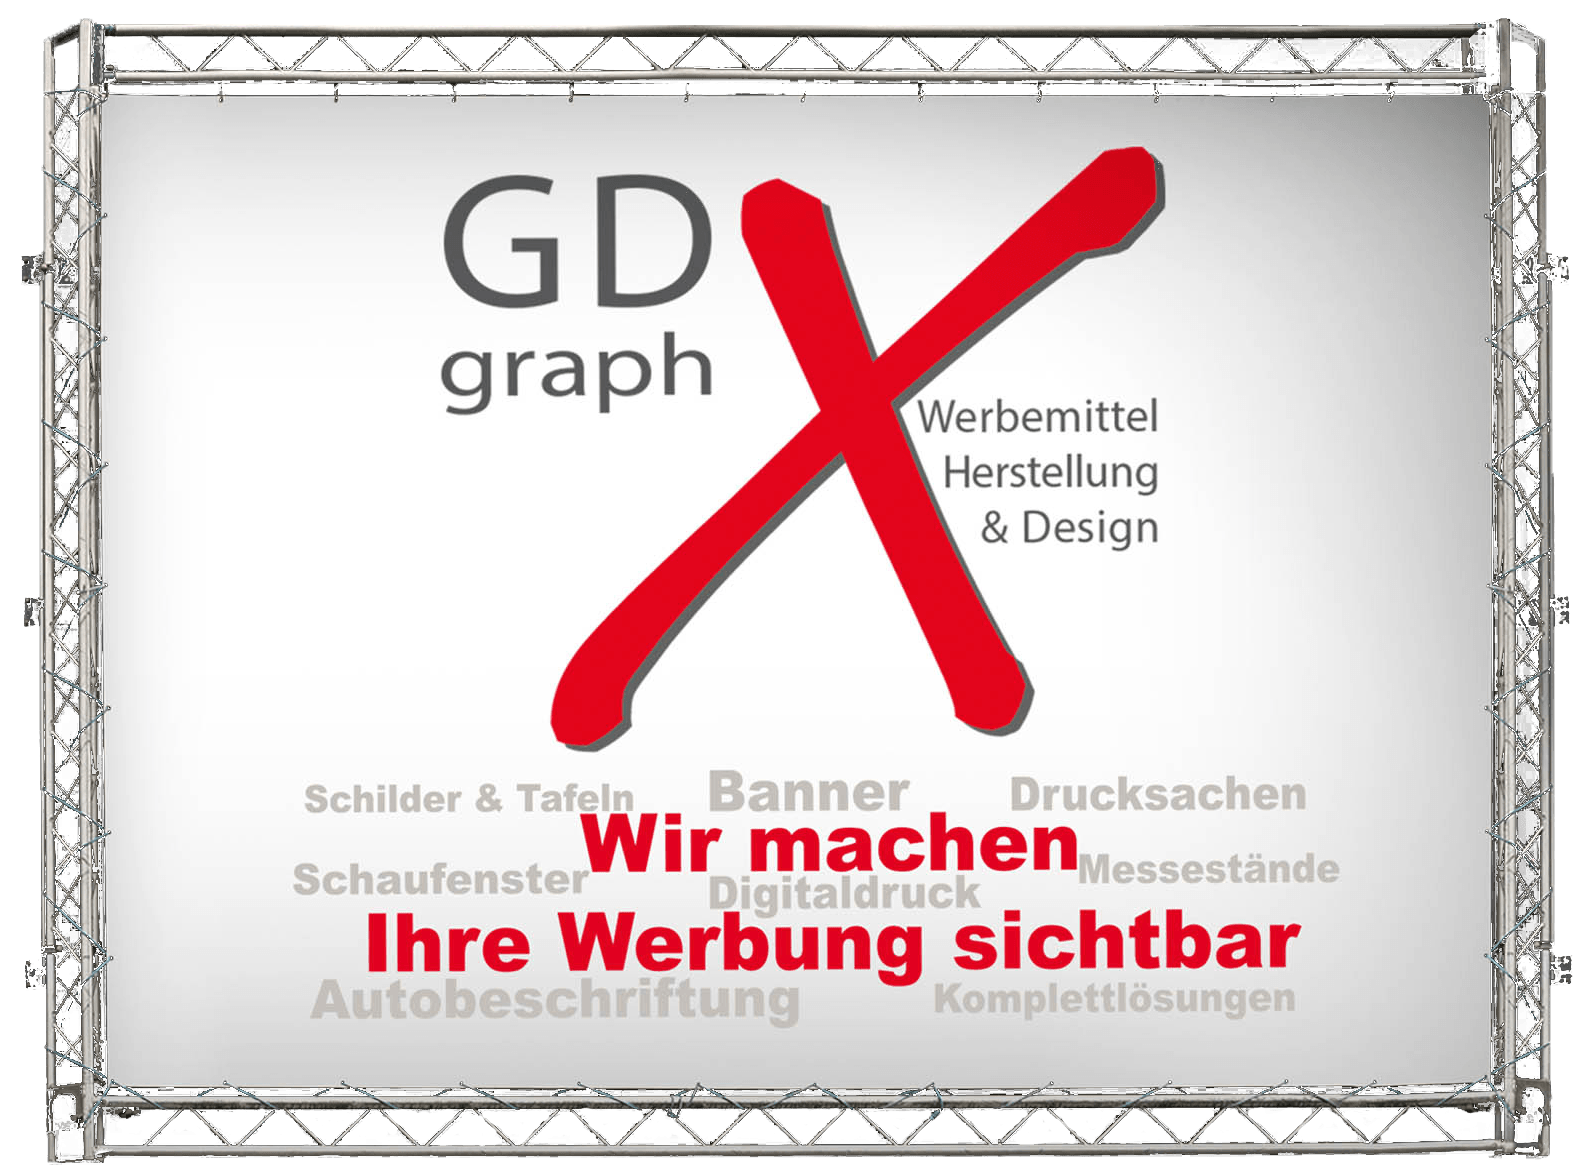 GDGraphX Werbemittel